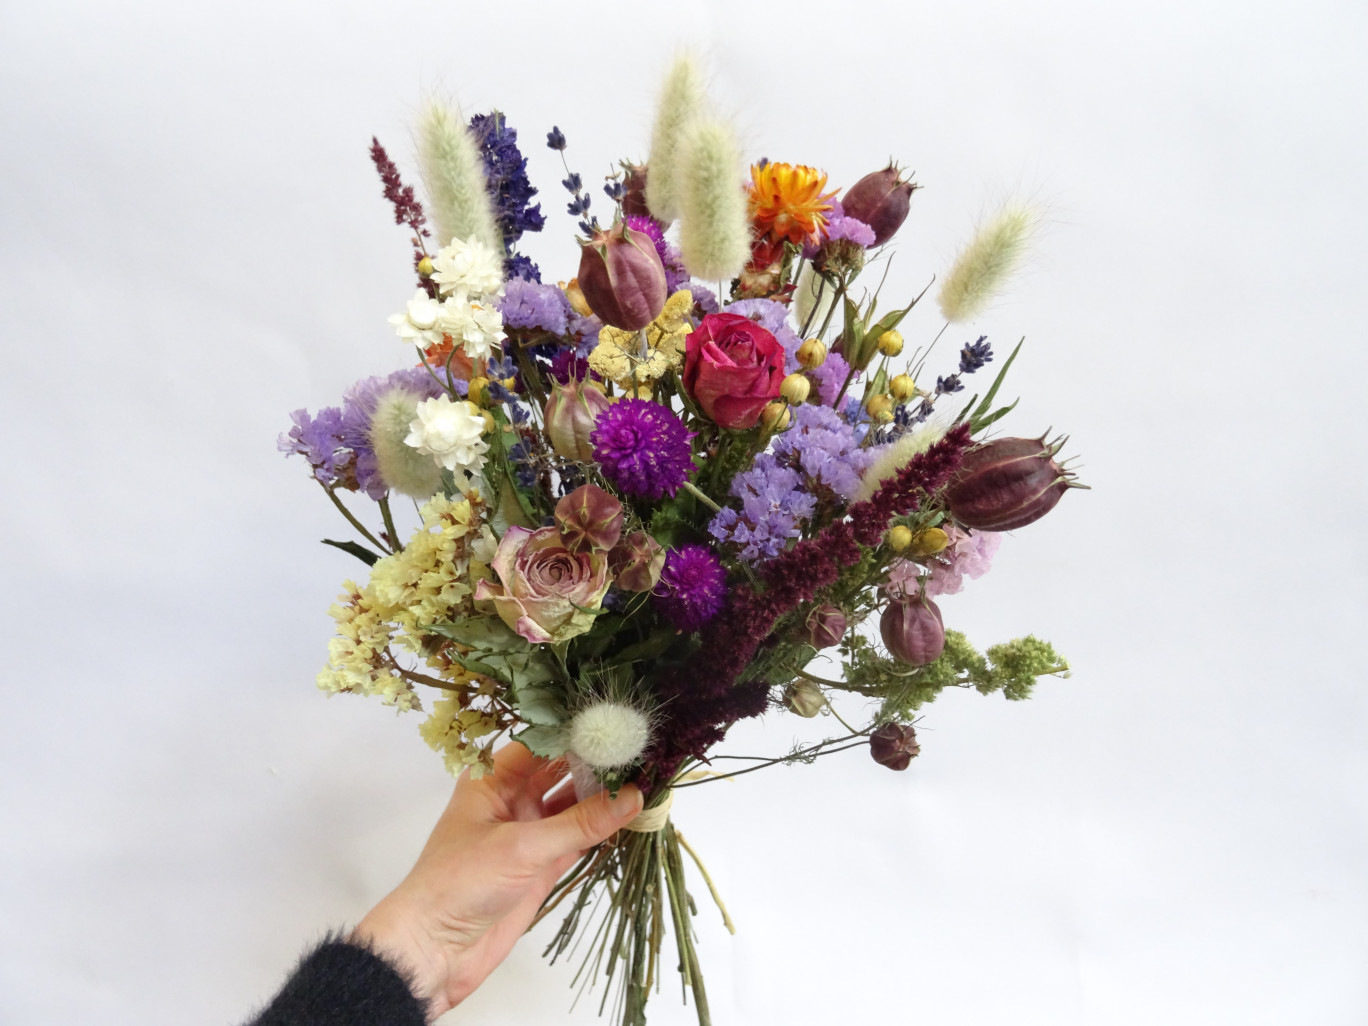 L'enseigne Pierres Fleurs Ciseaux propose à sa clientèle des bouquets de fleurs séchées. © Pierres Fleurs Ciseaux 